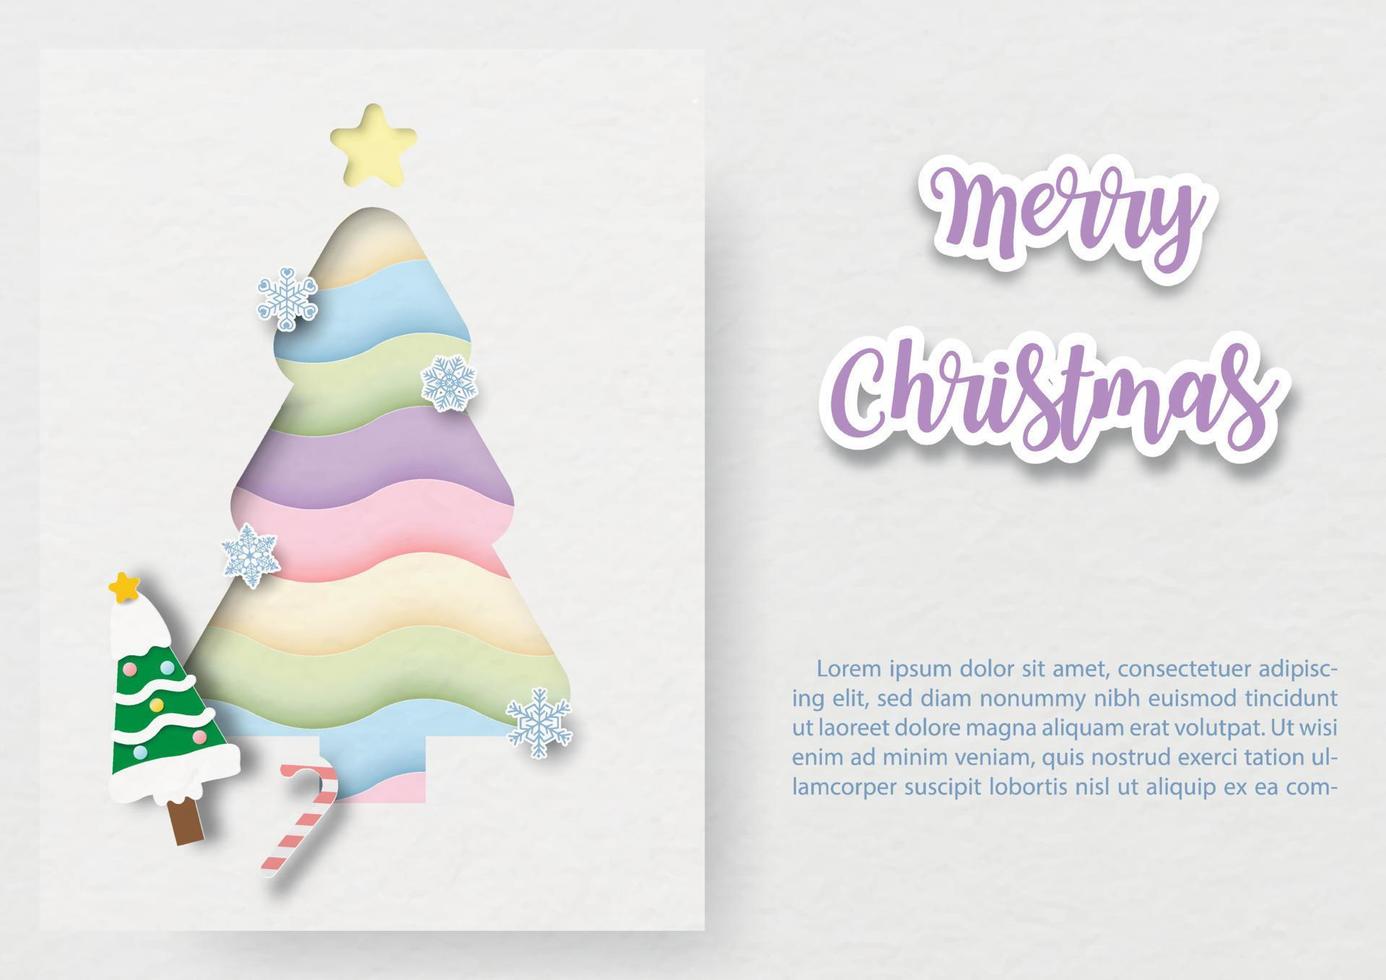 schattig en fantasie regenboog Kerstmis boom in papier besnoeiing stijl Aan wit kaart met voorbeeld teksten en vrolijk Kerstmis belettering Aan wit papier patroon achtergrond. vector